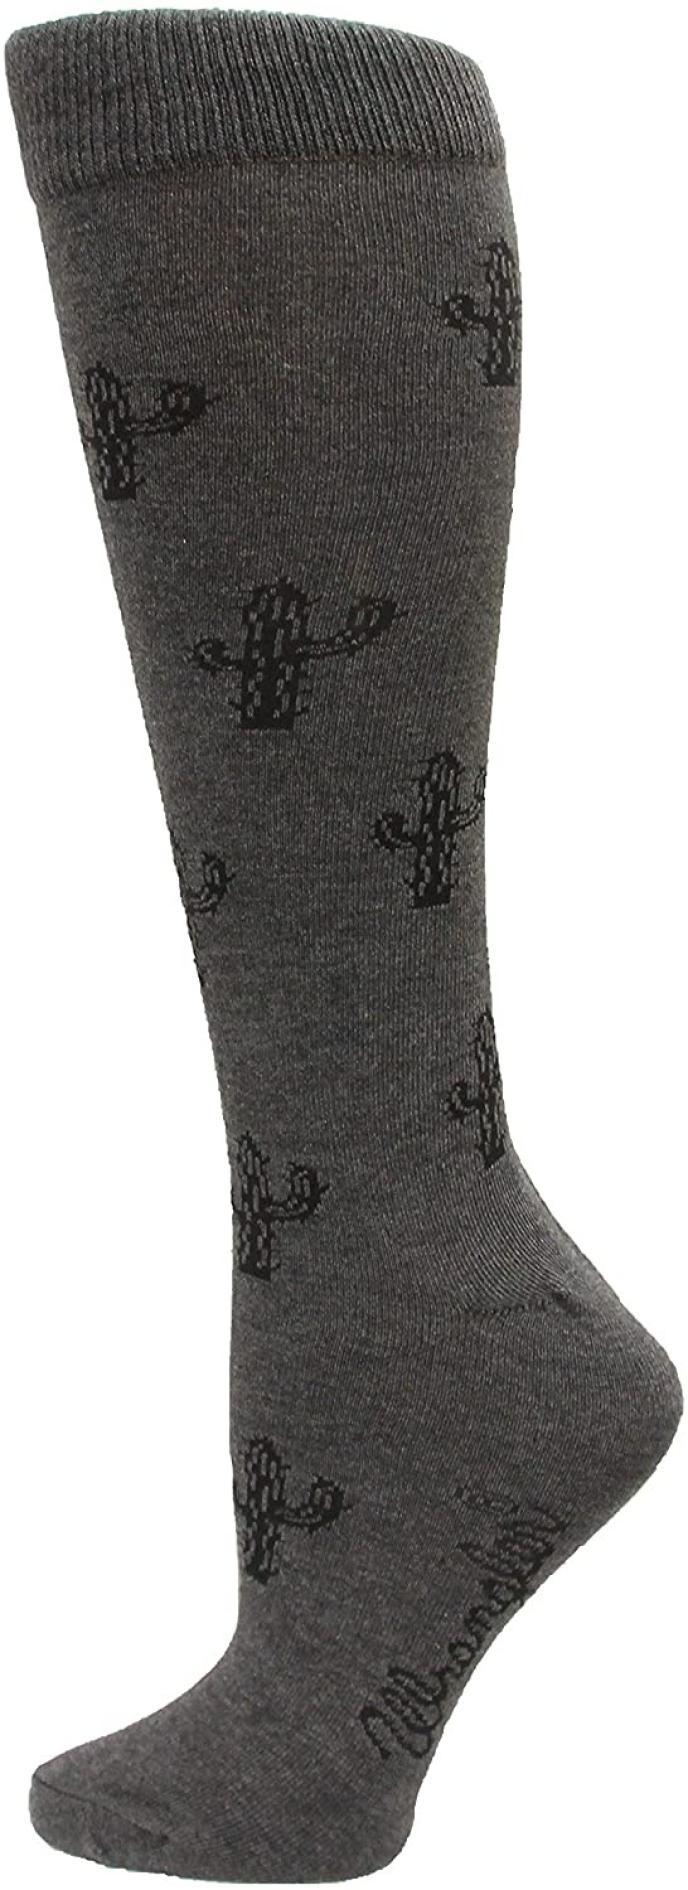 Wrangler Women's Cactus Knee High Sock